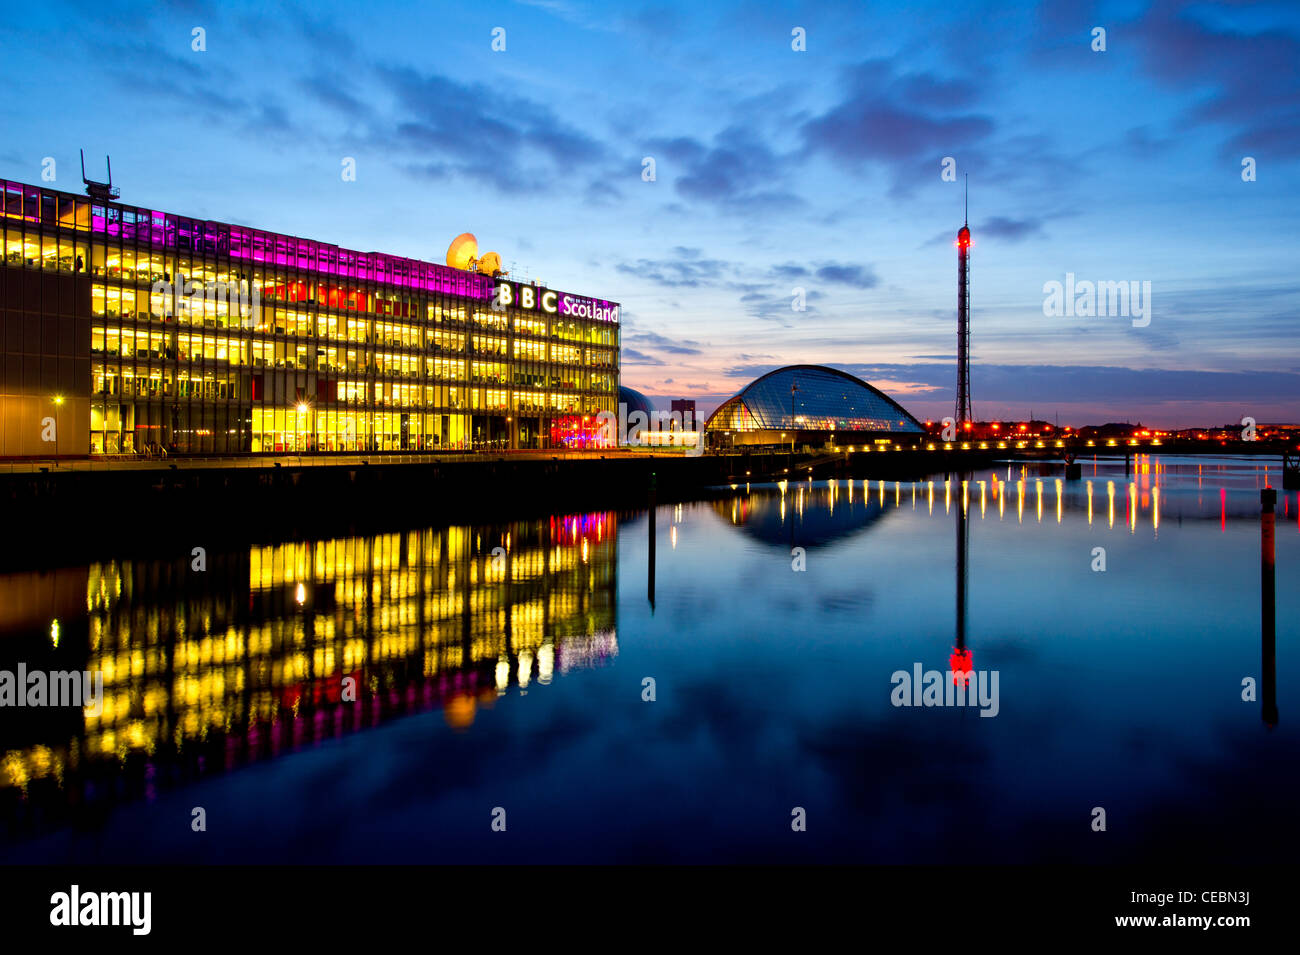 Glasgow Science Centre & Turm mit BBC Scotland Gebäude, Glasgow, Schottland, UK. Stockfoto